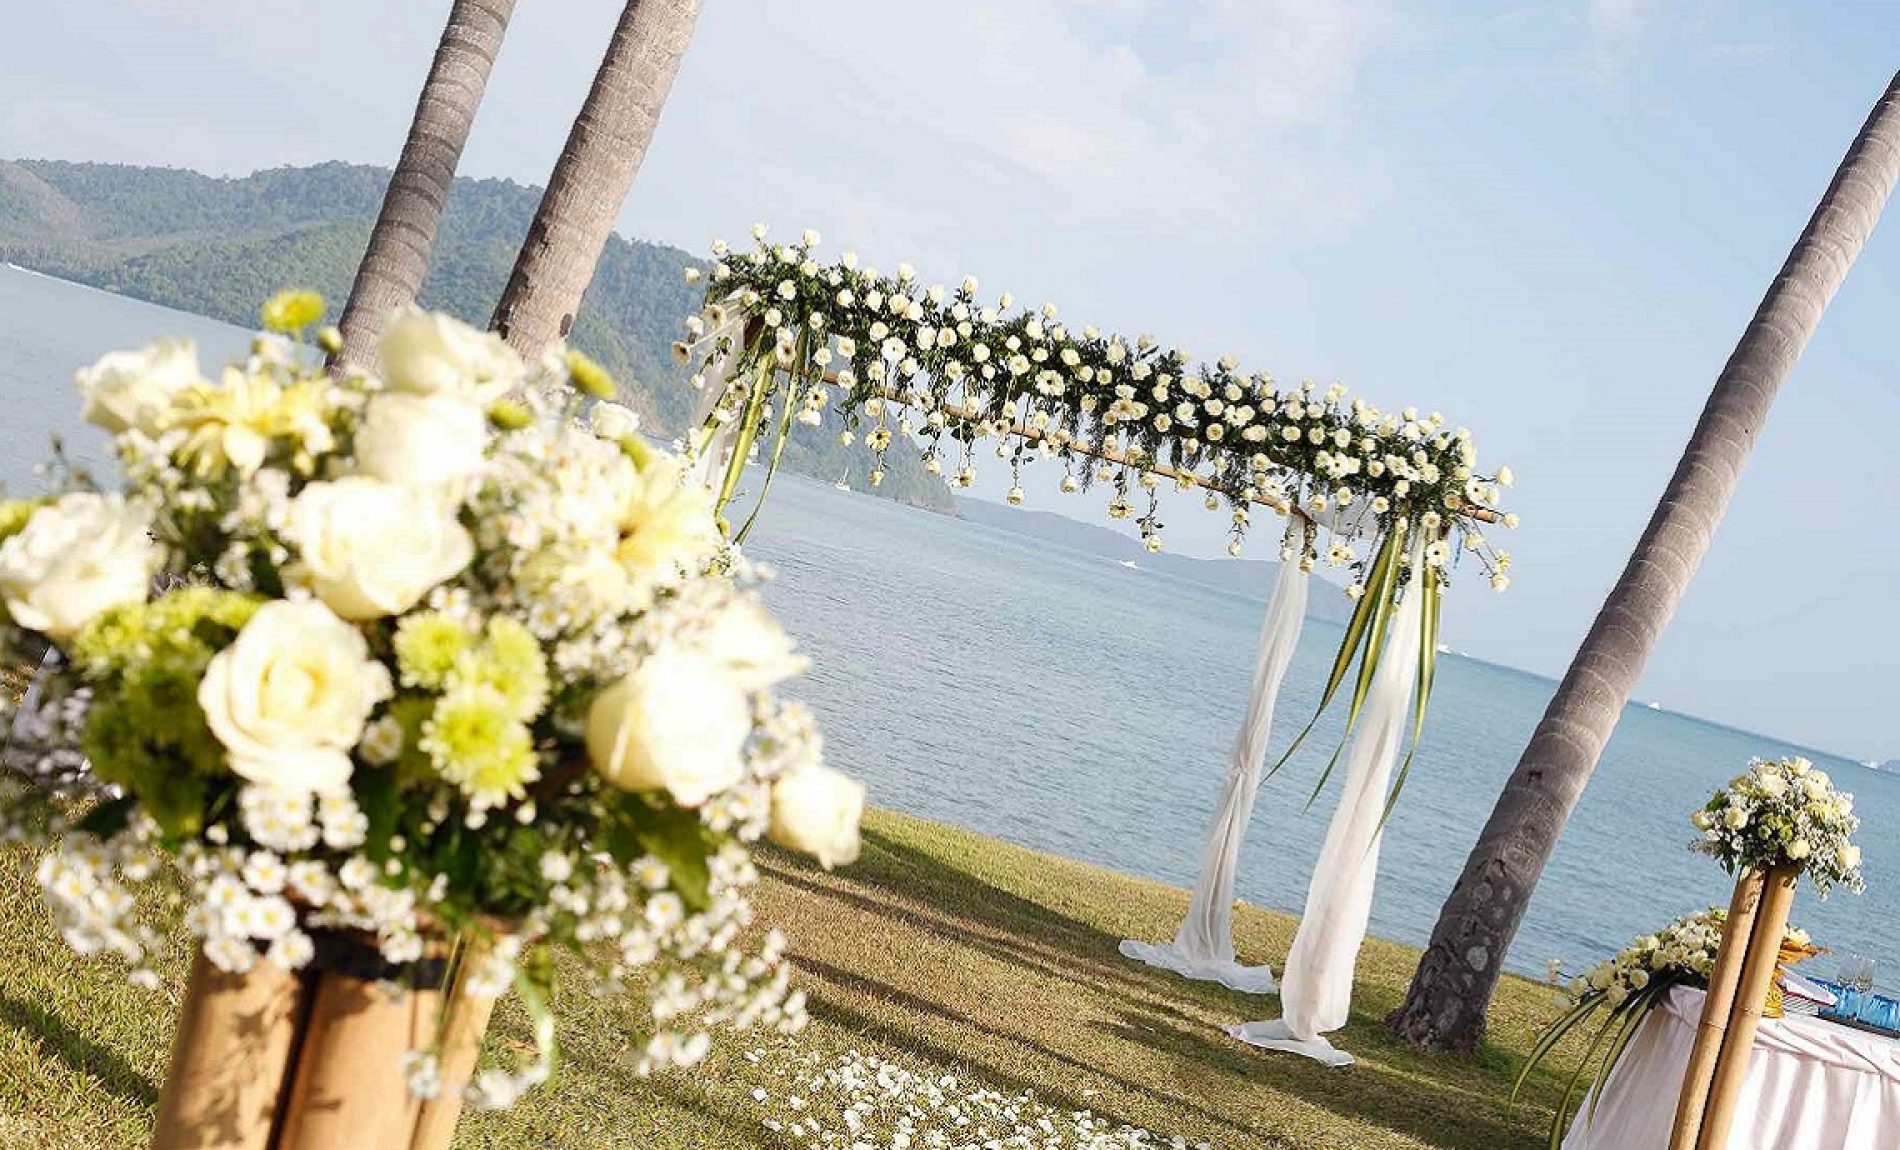 Matrimonio in spiaggia: 7 idee per organizzare un evento favoloso